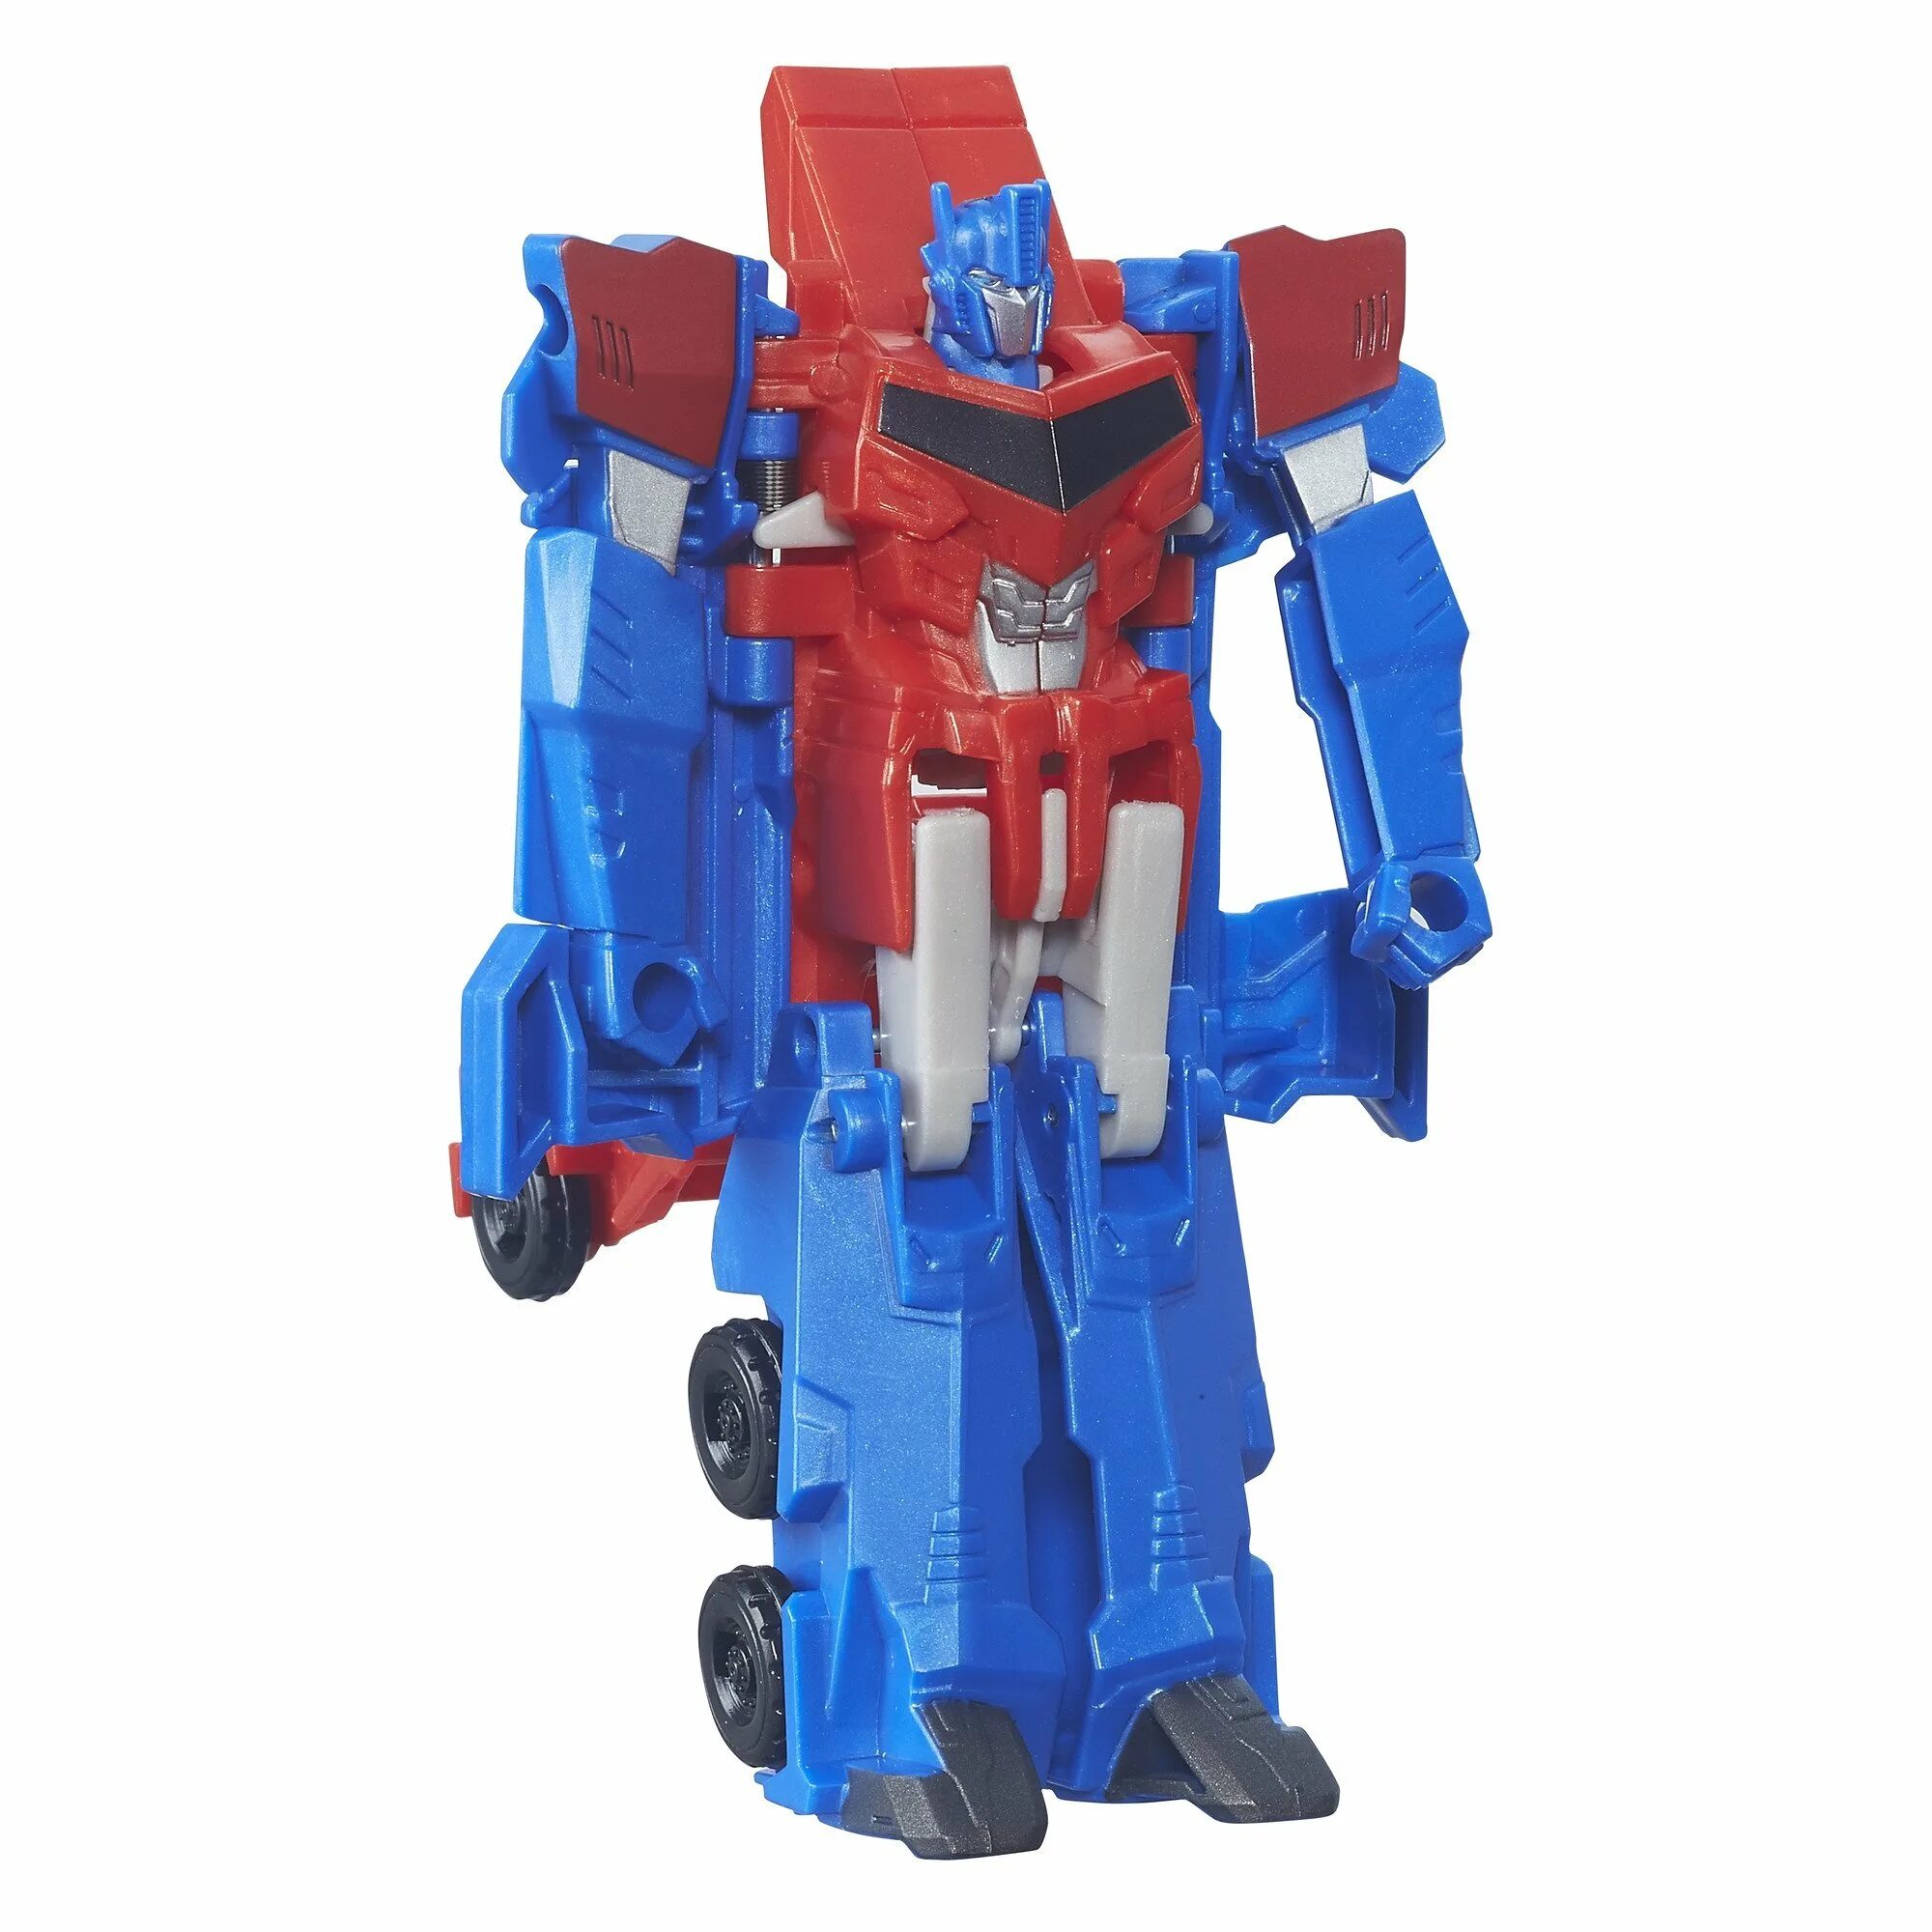 Под оптимус прайм. Робот Hasbro Transformers Оптимус Прайм. Трансформер Robots in Disguise 3-Step Changers - Optimus Prime. Transformers Robots in Disguise Оптимус Прайм. Трансформеры Hasbro УАНСТЭП (b0068).